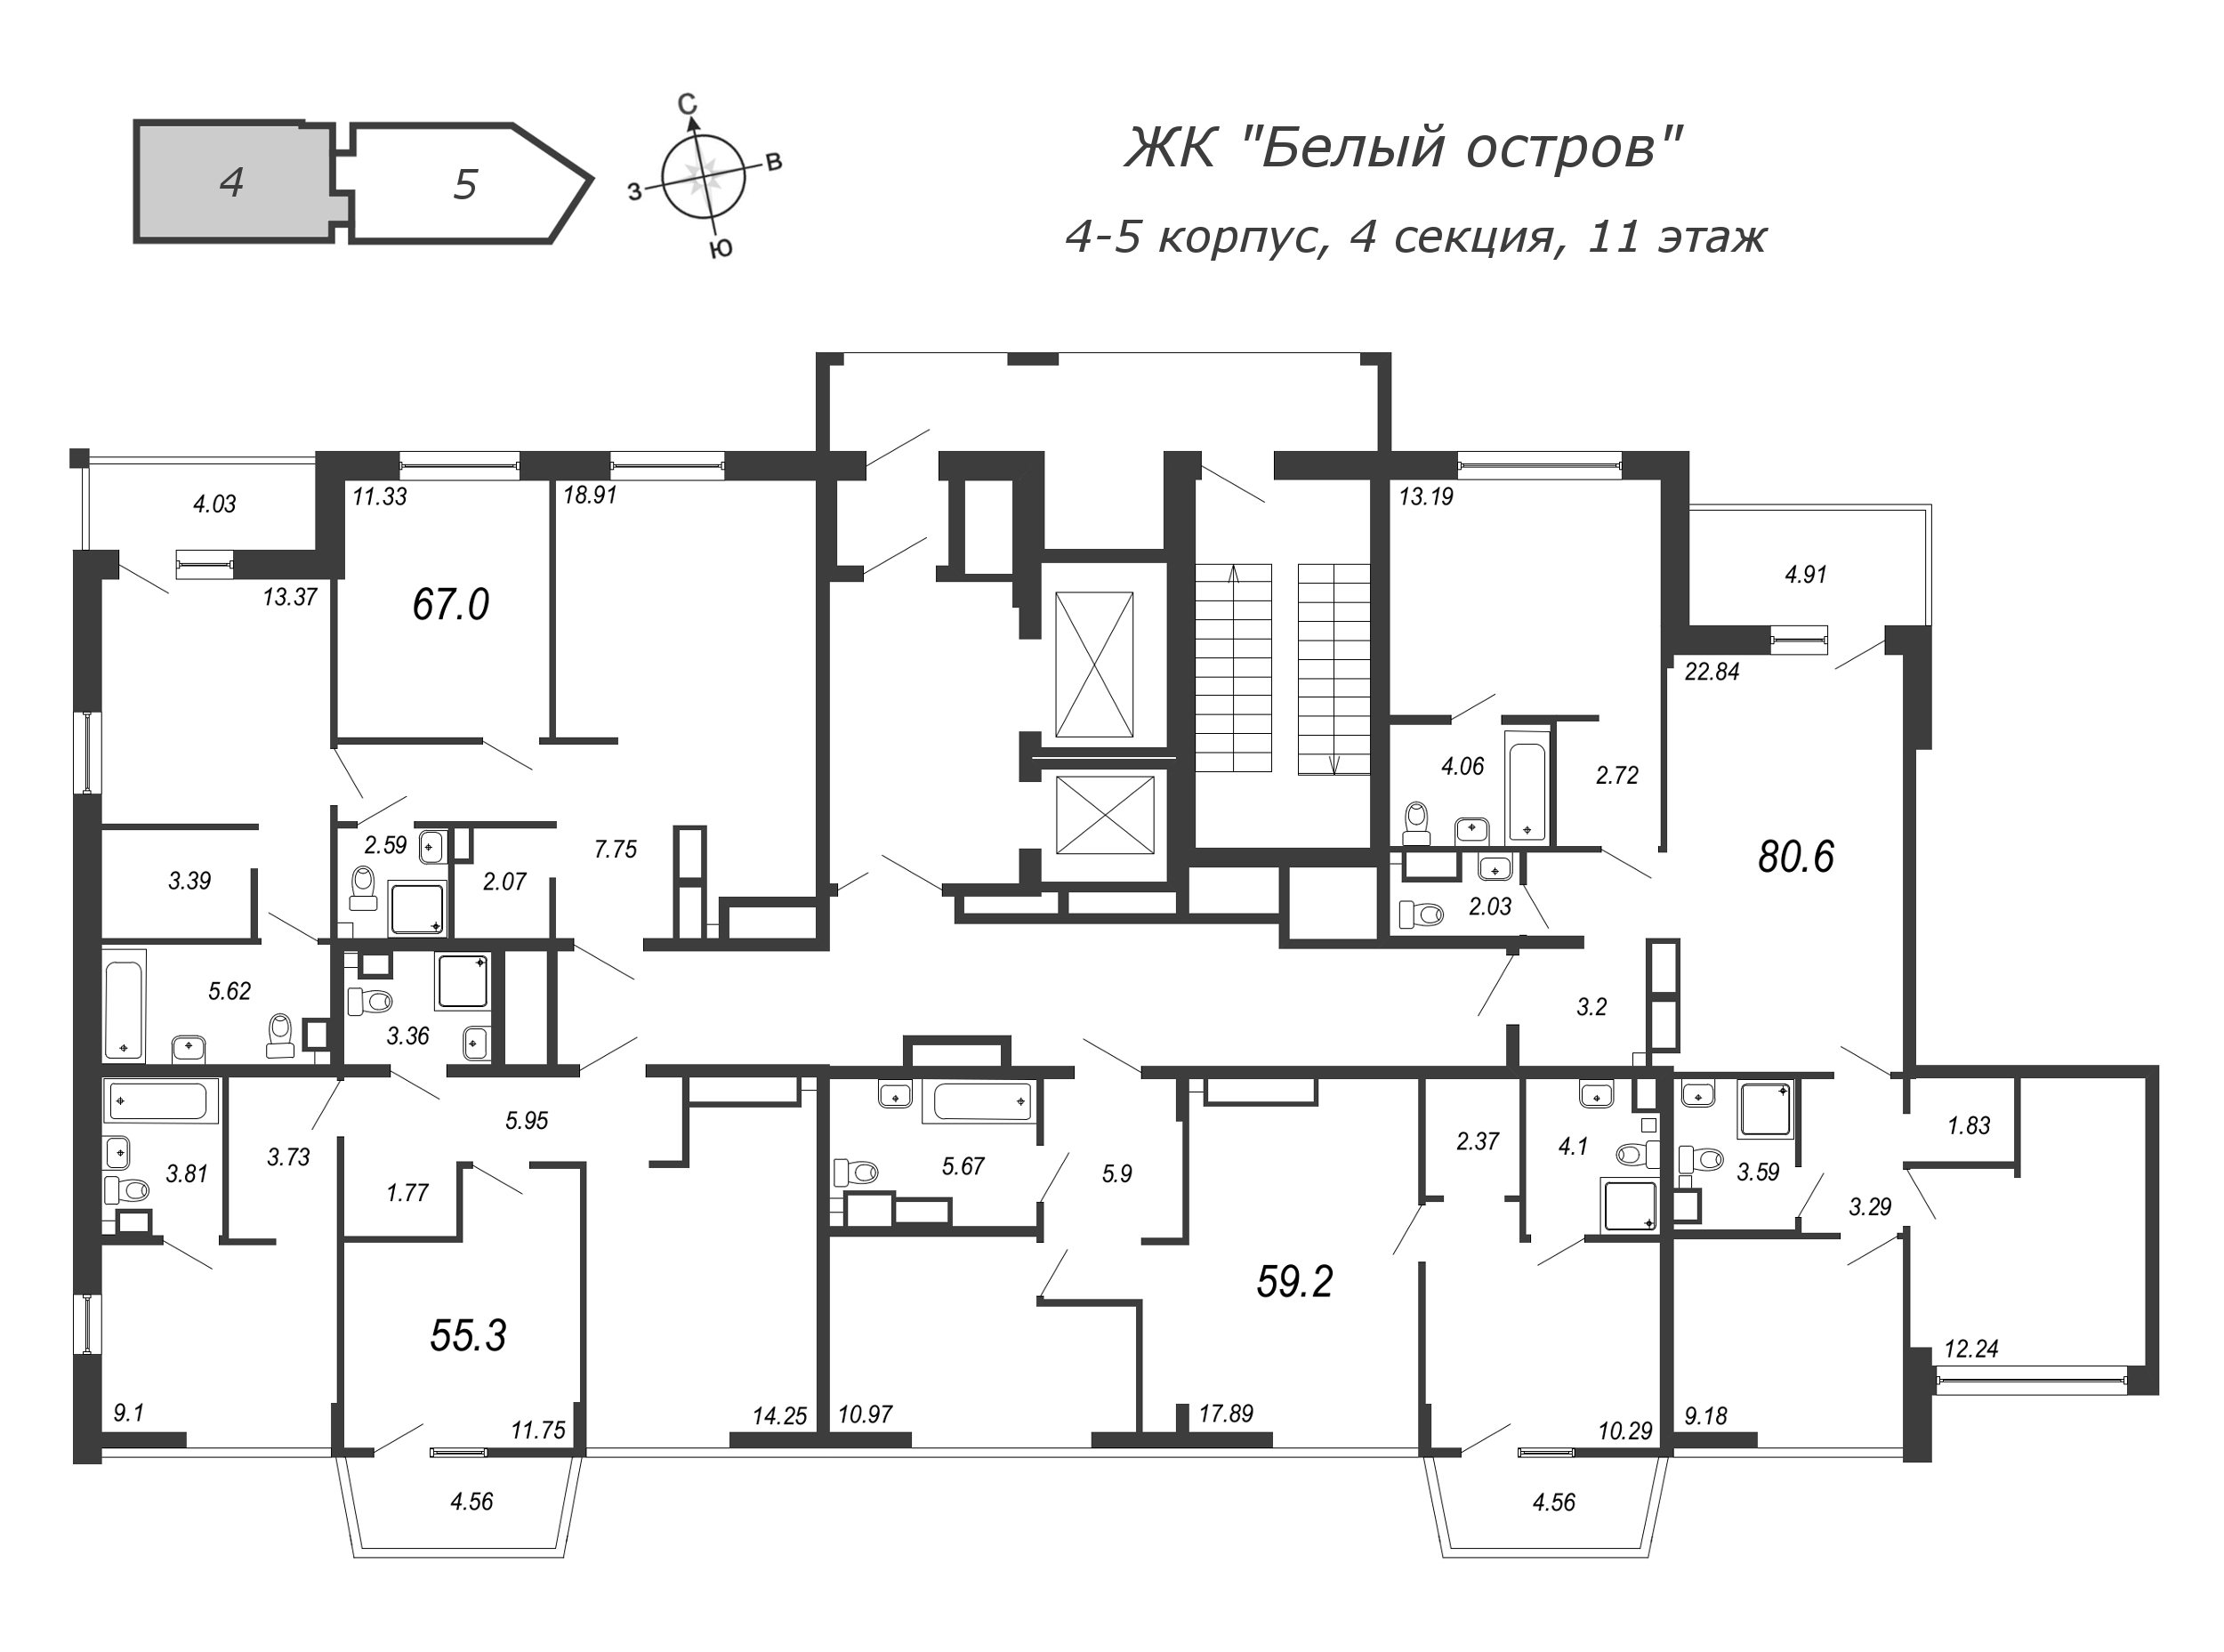 4-комнатная (Евро) квартира, 83 м² в ЖК "Белый остров" - планировка этажа